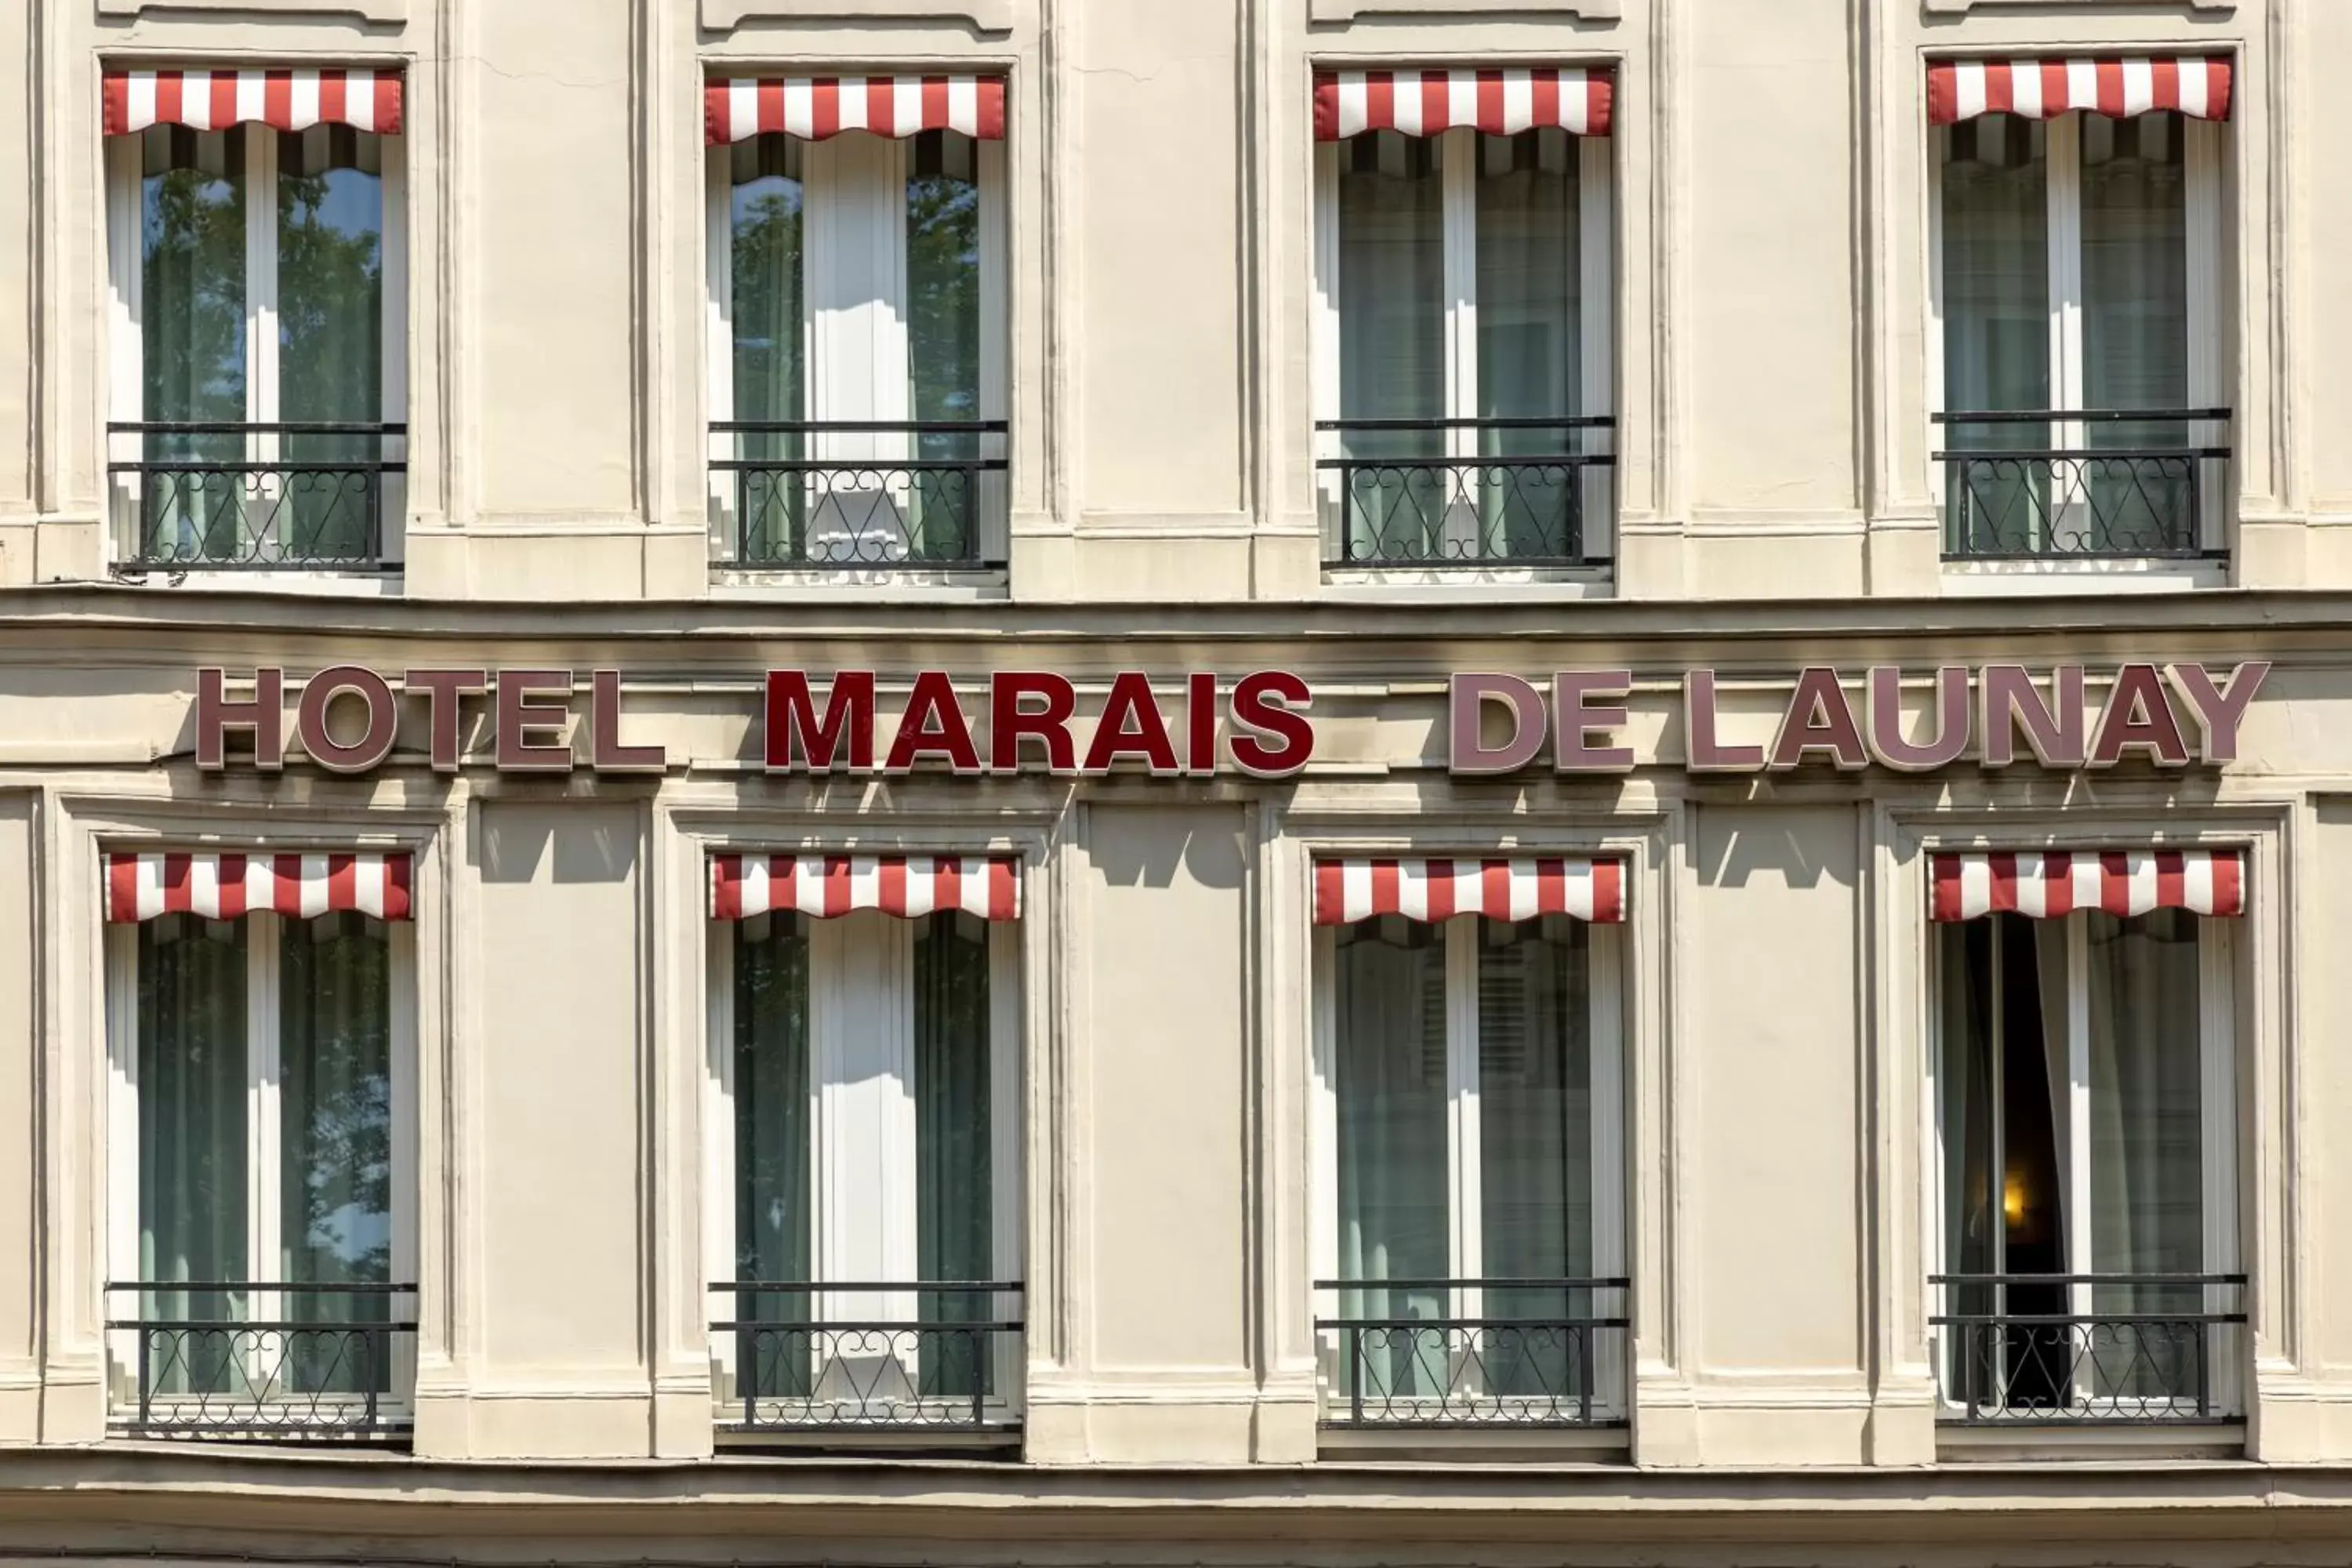 Facade/entrance, Property Building in Hôtel Marais de Launay